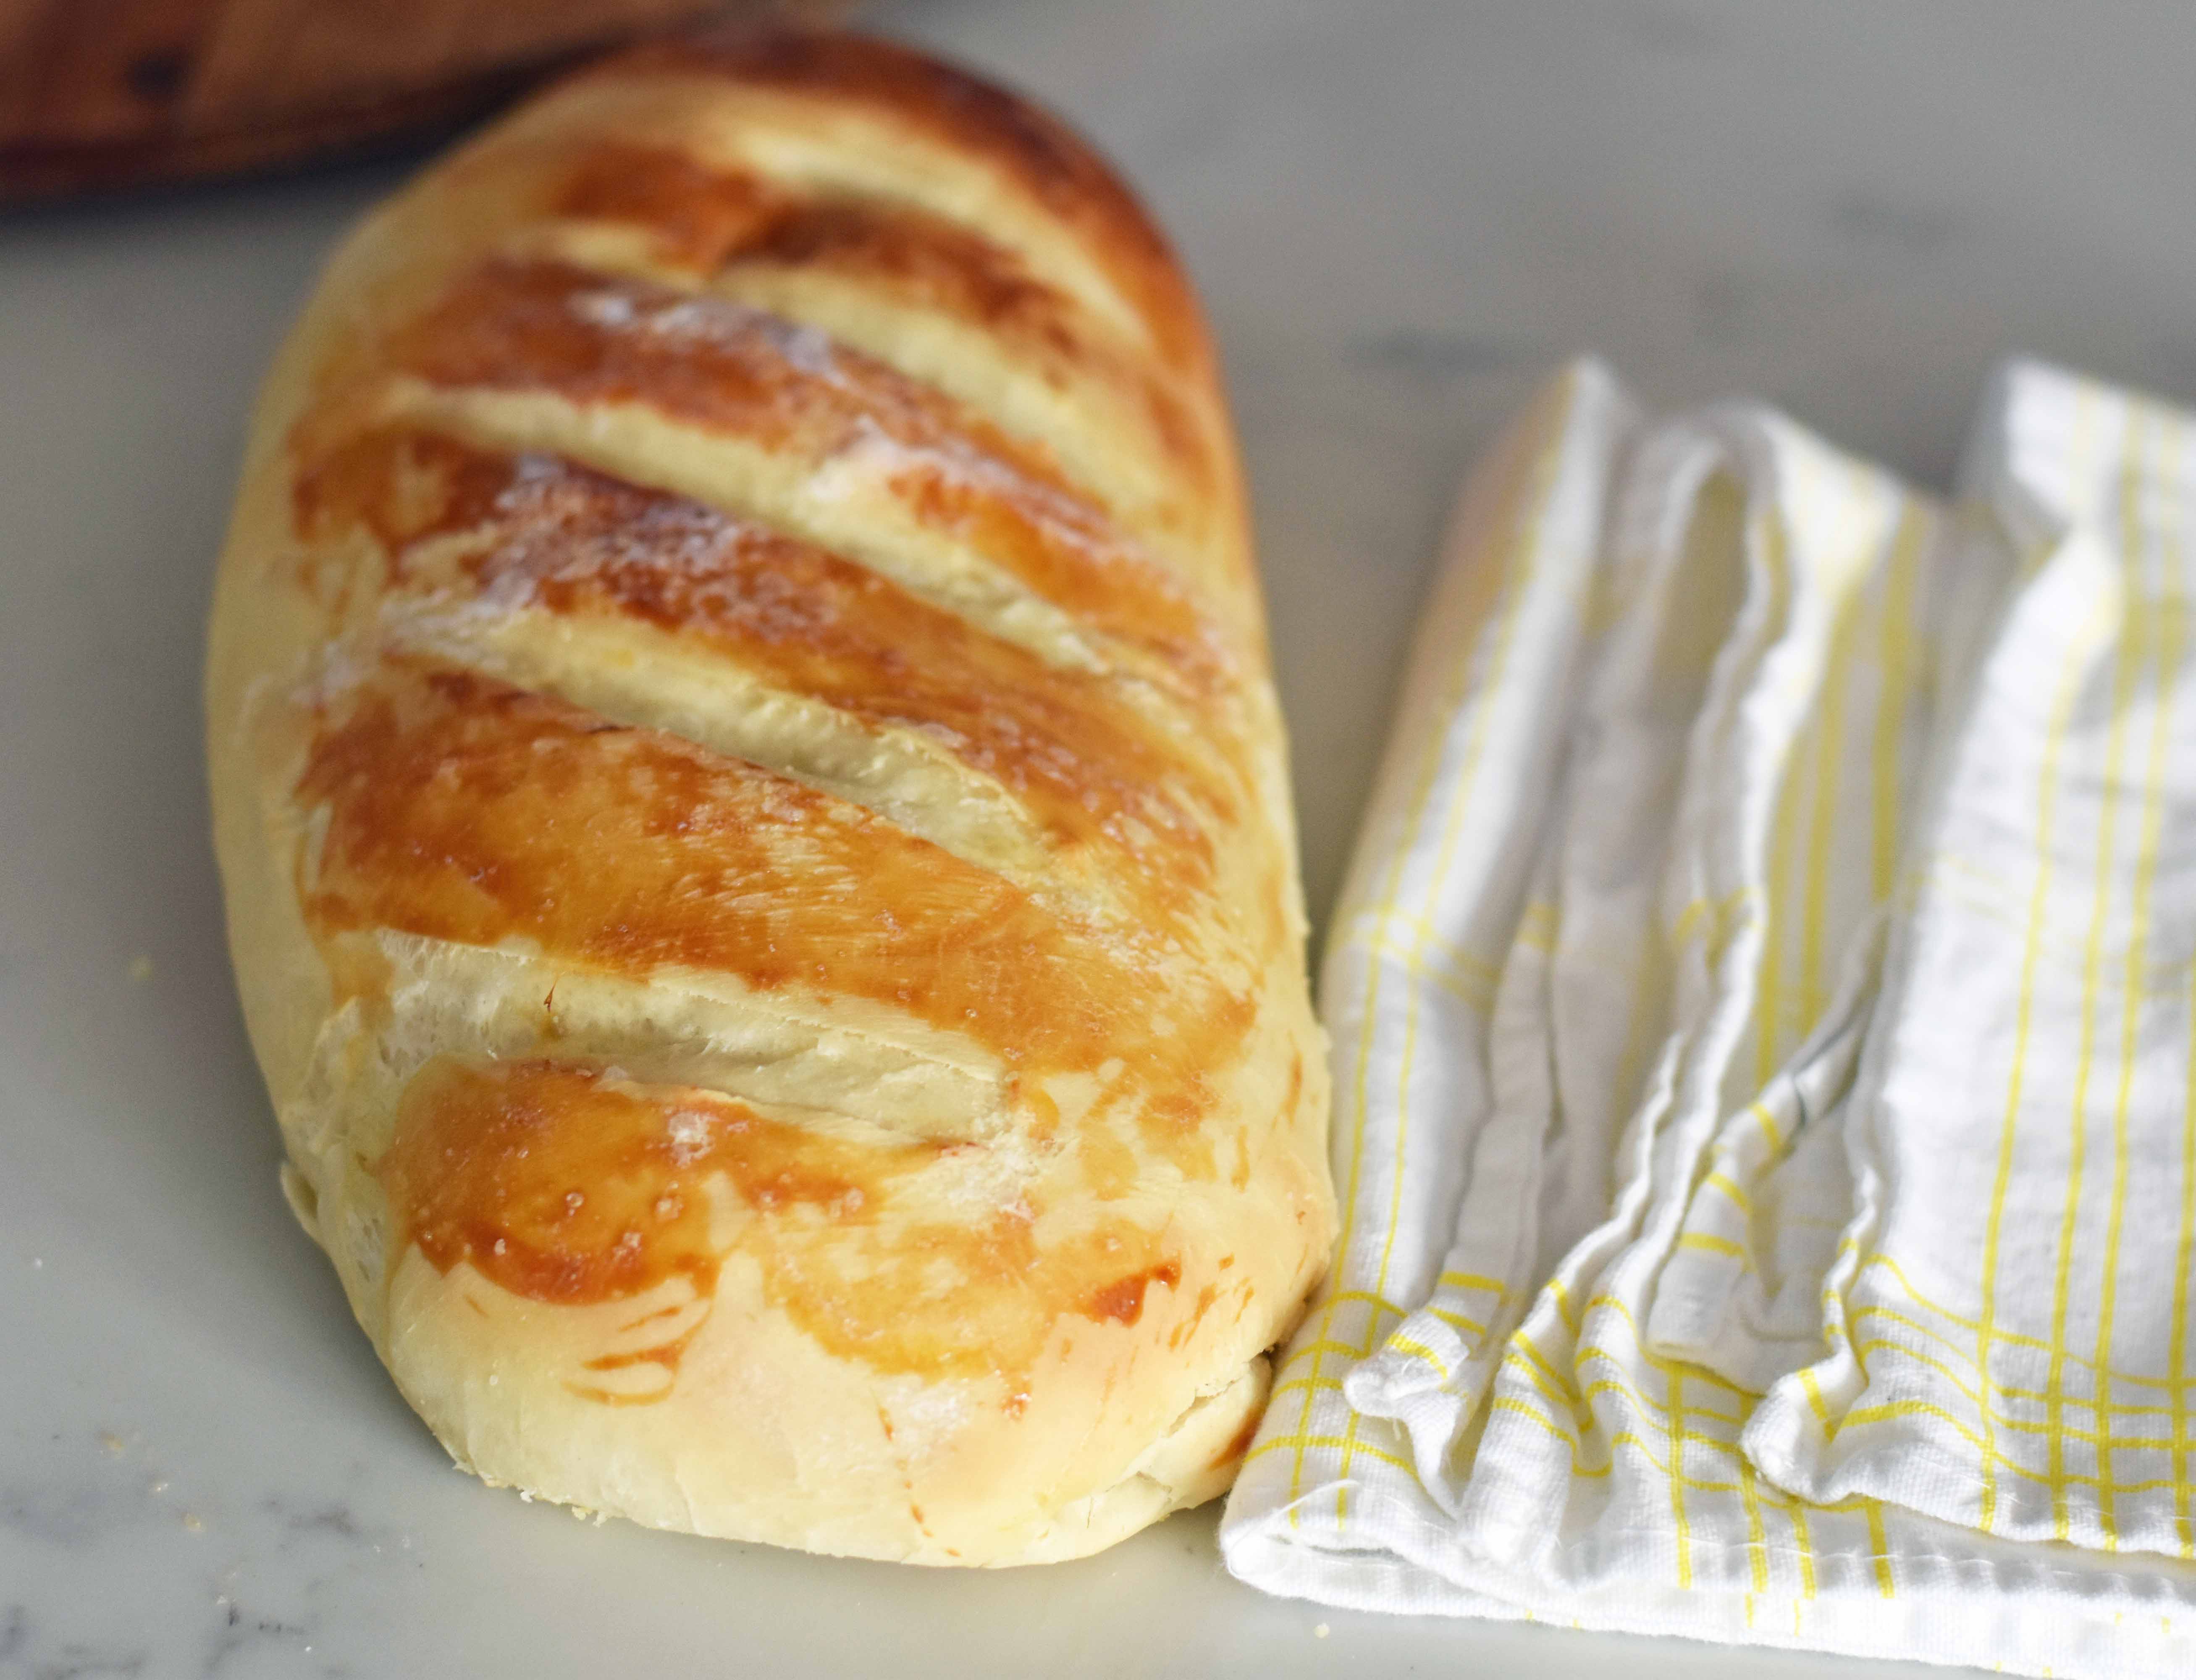 https://www.modernhoney.com/wp-content/uploads/2015/12/Homemade-Bakery-French-Bread.jpg